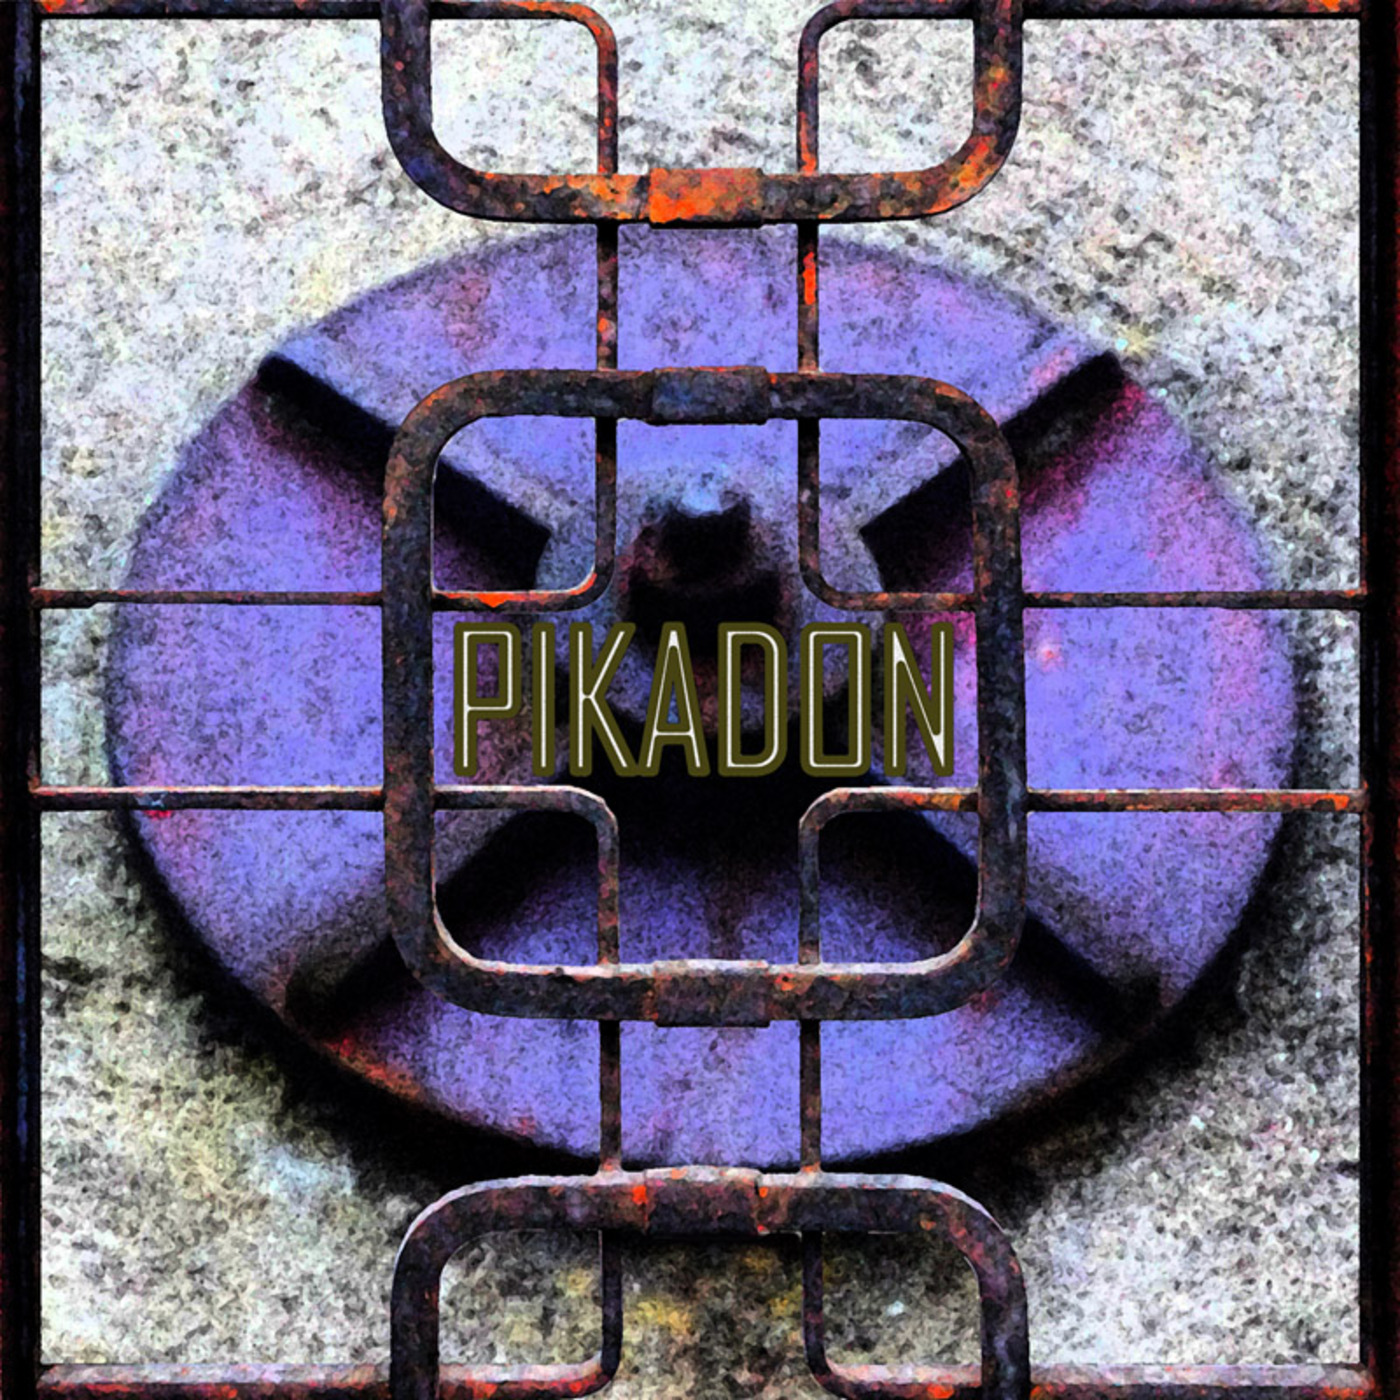 34 - Pikadon - Kill before I die psy doom mix (Petrolio Remix)